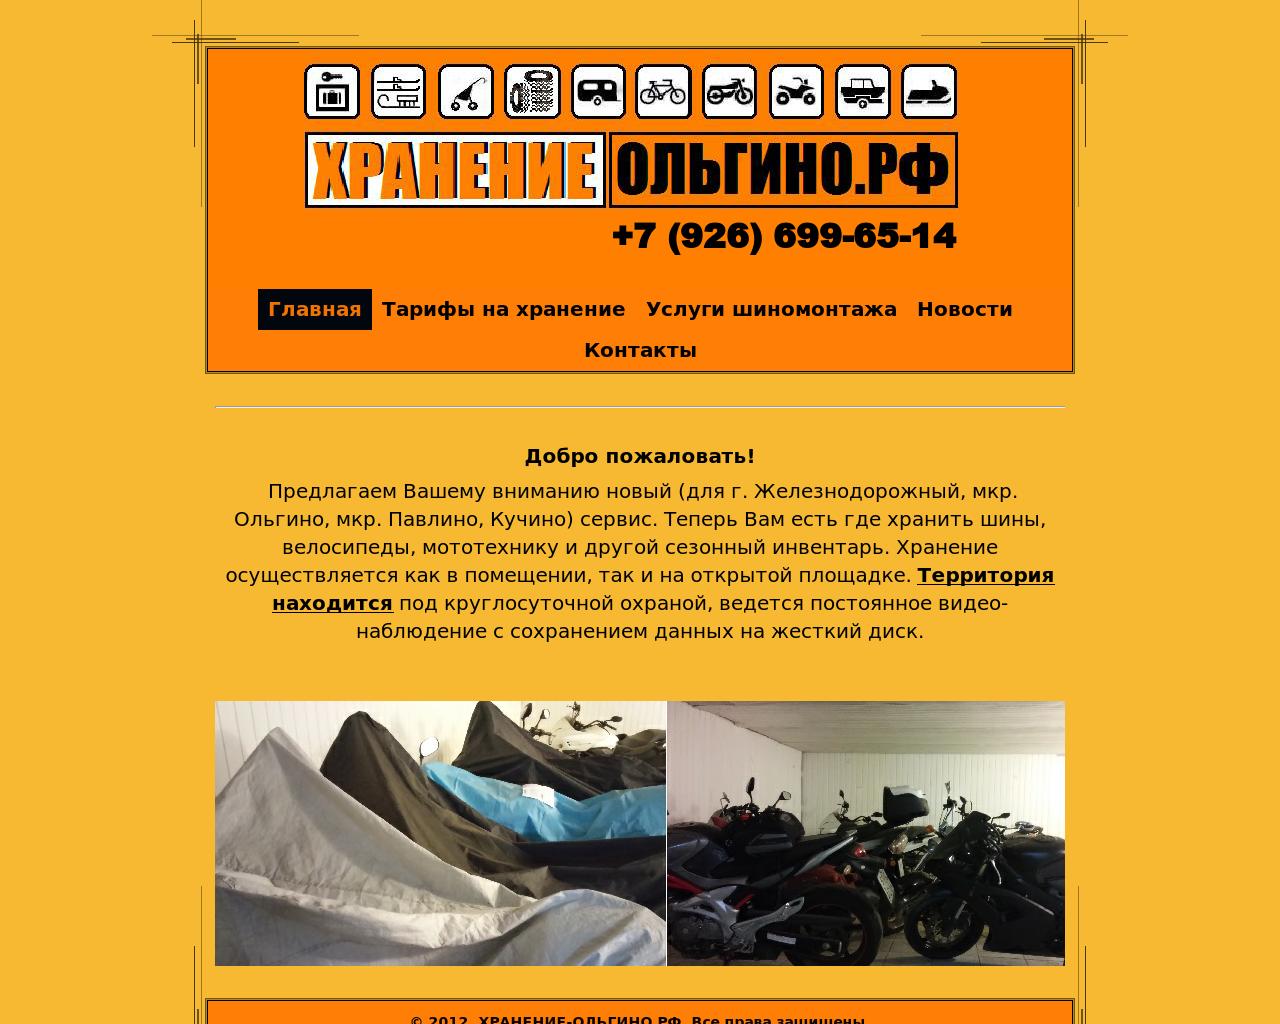 Изображение сайта хранение-ольгино.рф в разрешении 1280x1024